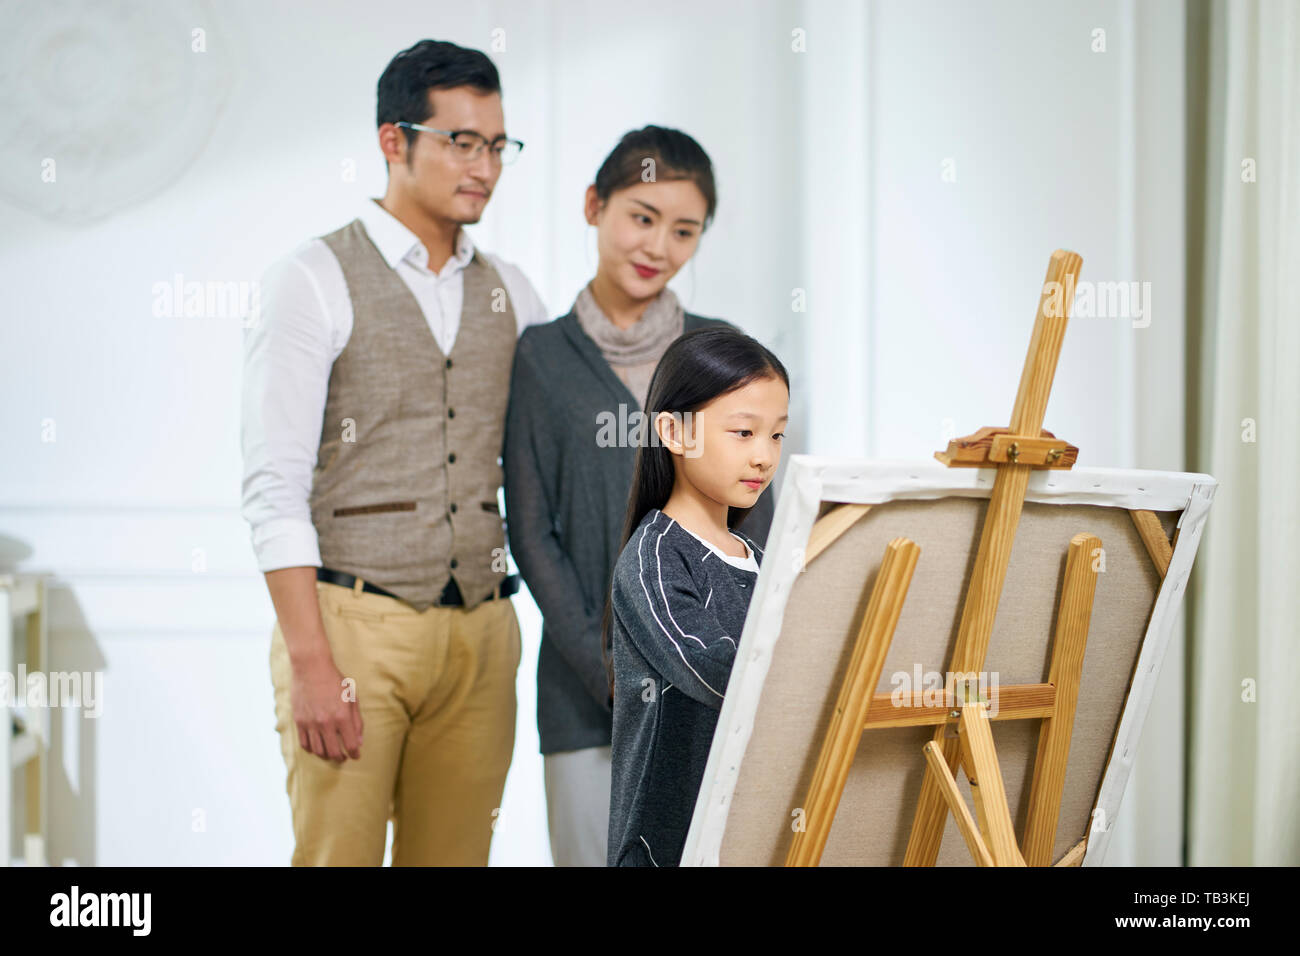 Belle petite fille asiatique avec de longs cheveux noirs faisant une peinture sur toile pendant que les parents se tenant derrière l'observation. Banque D'Images